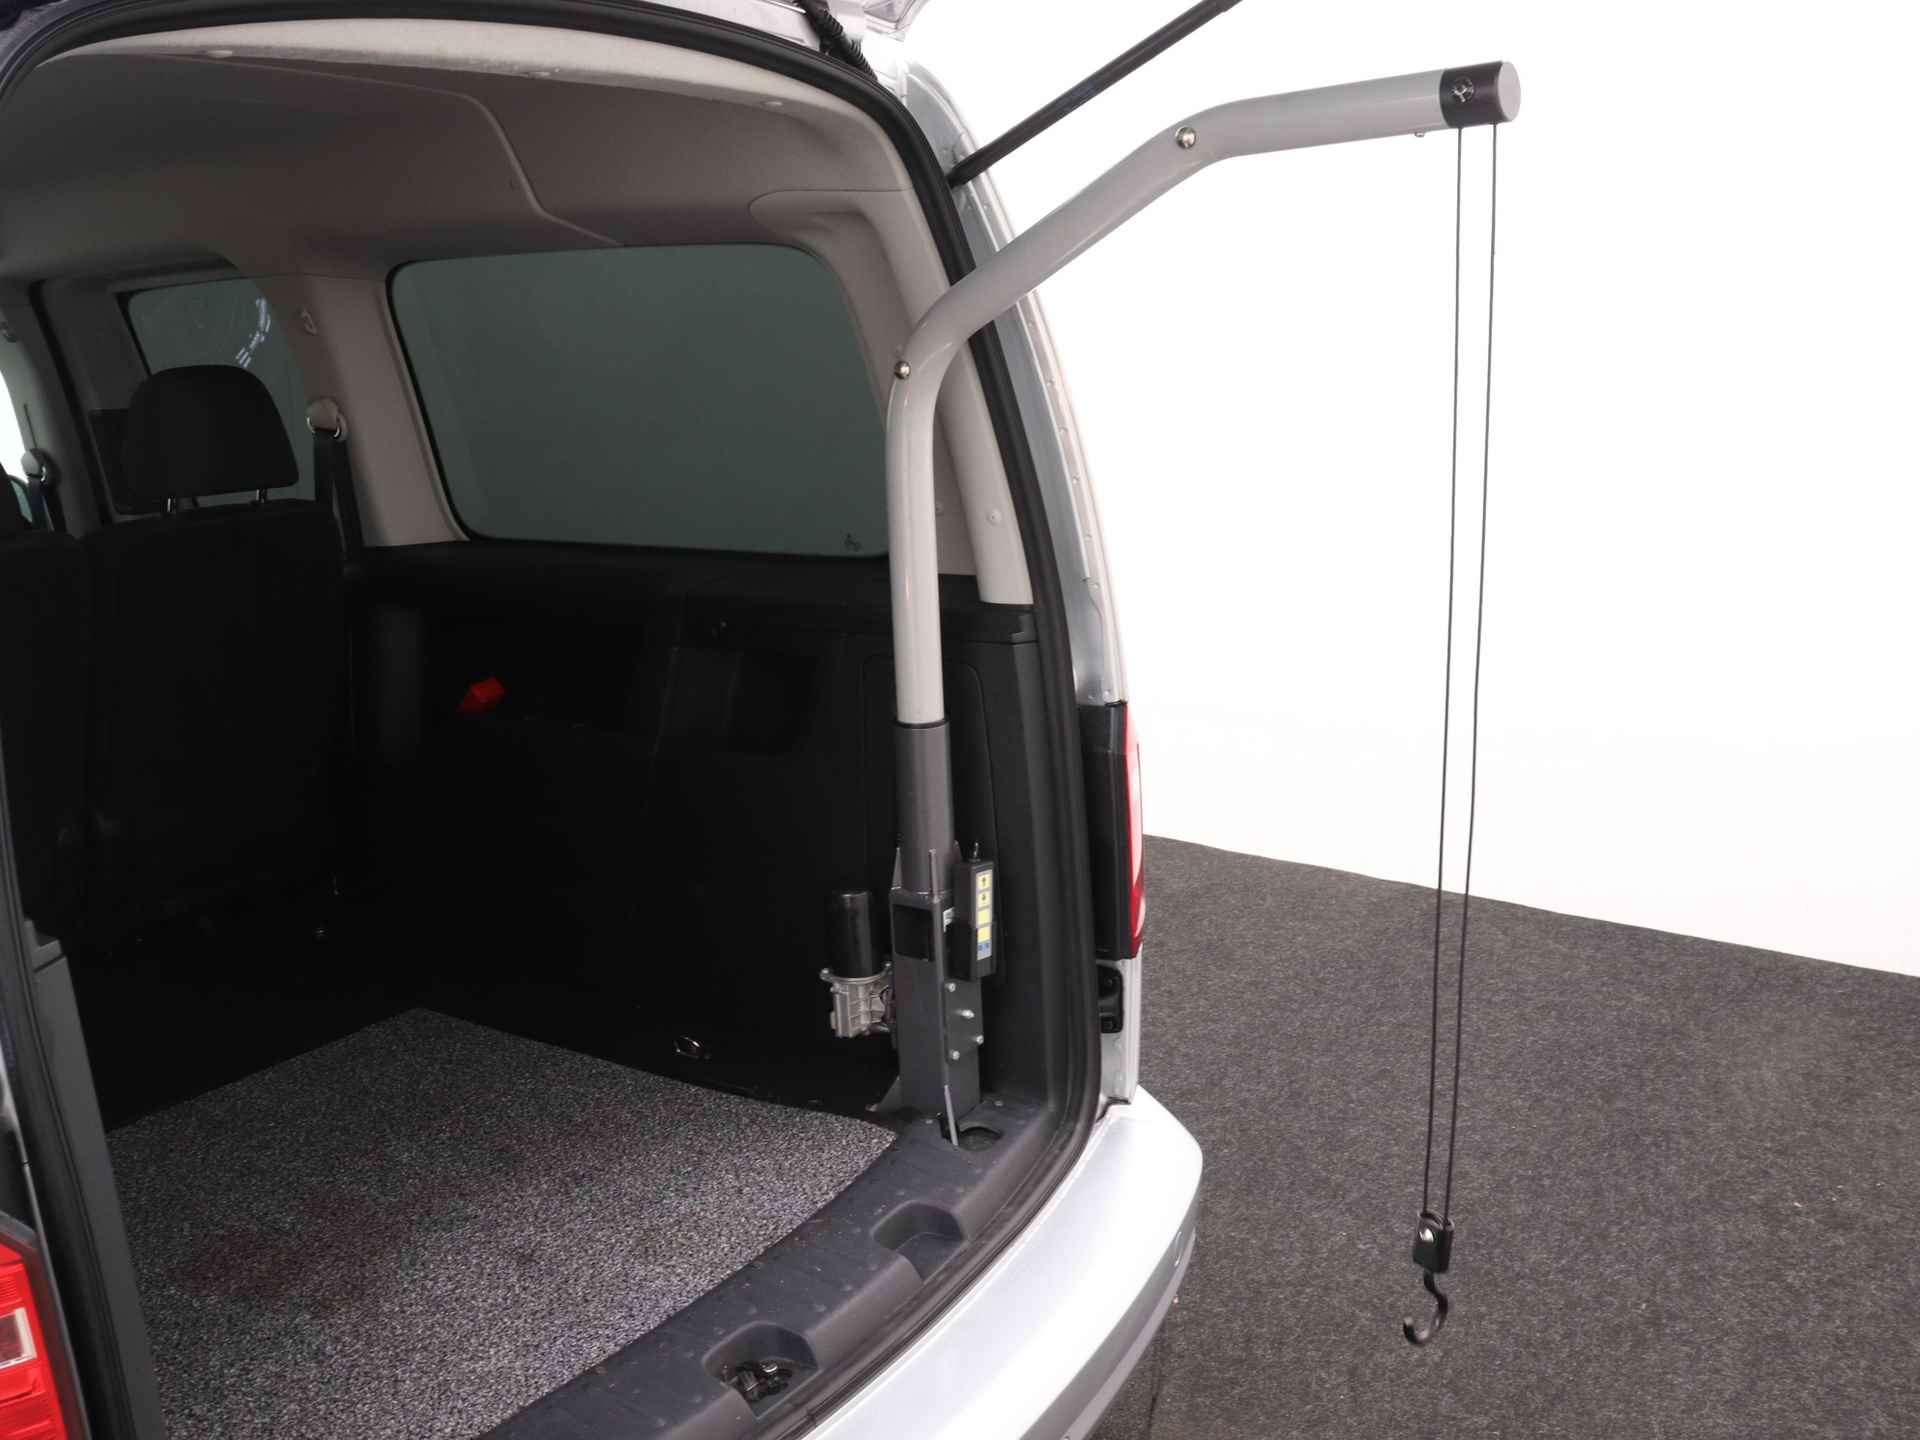 Volkswagen Caddy Maxi 1.0 TSI Trendline 5p Ingepland voor nieuwe bodemverlaging t.b.v. rolstoelvervoer (Prijs incl. bodemverlaging) - 32/36